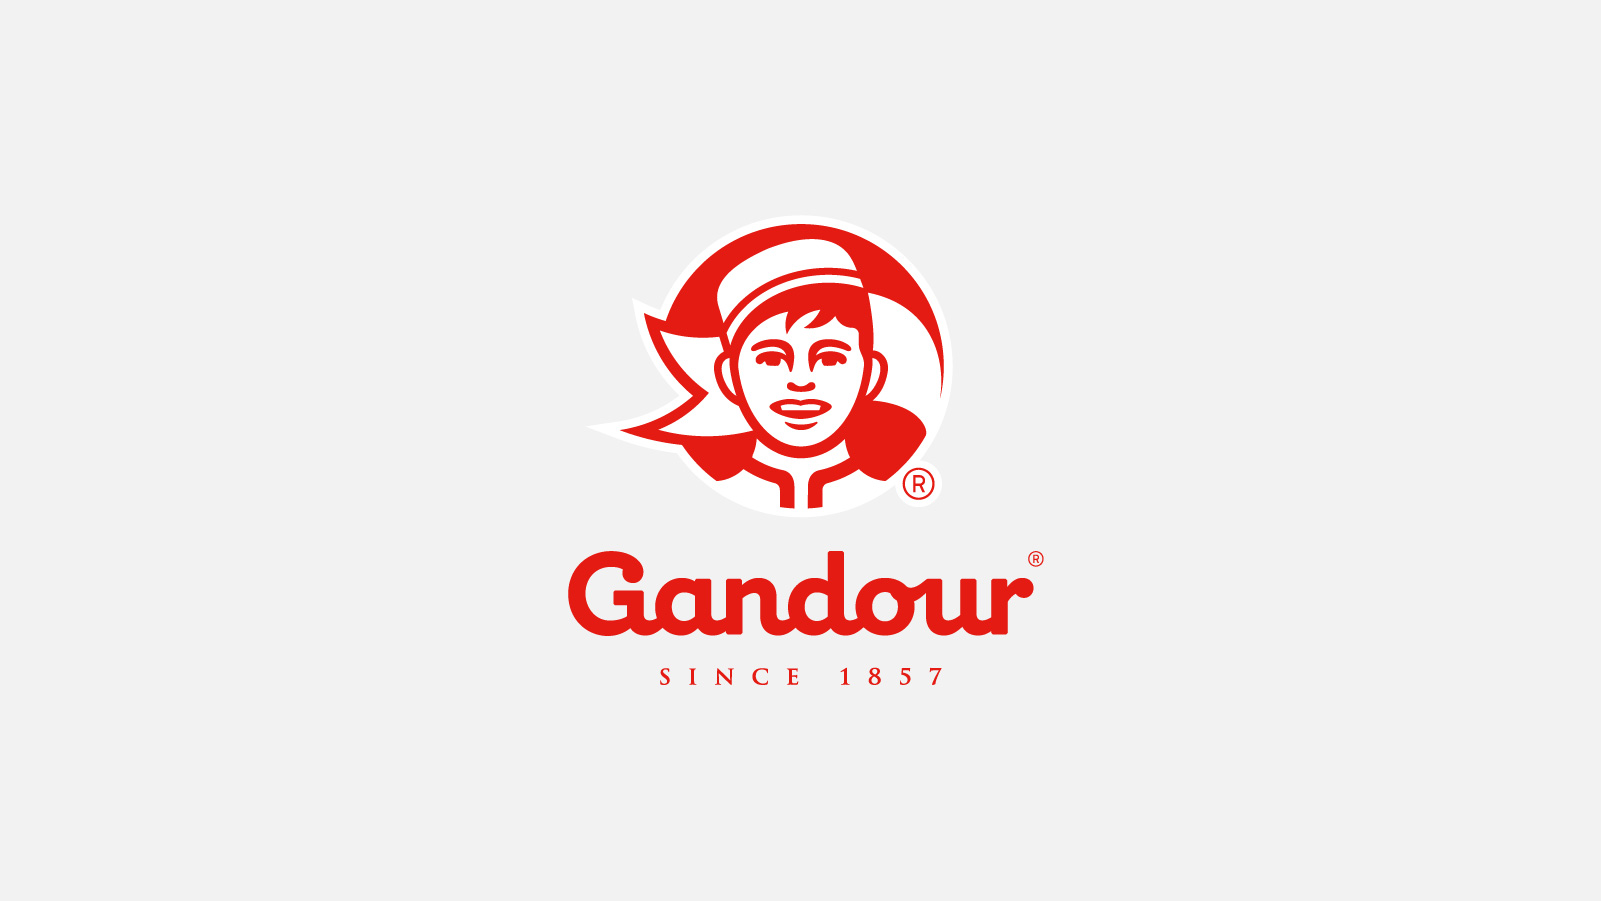 Gandour Brand Guide